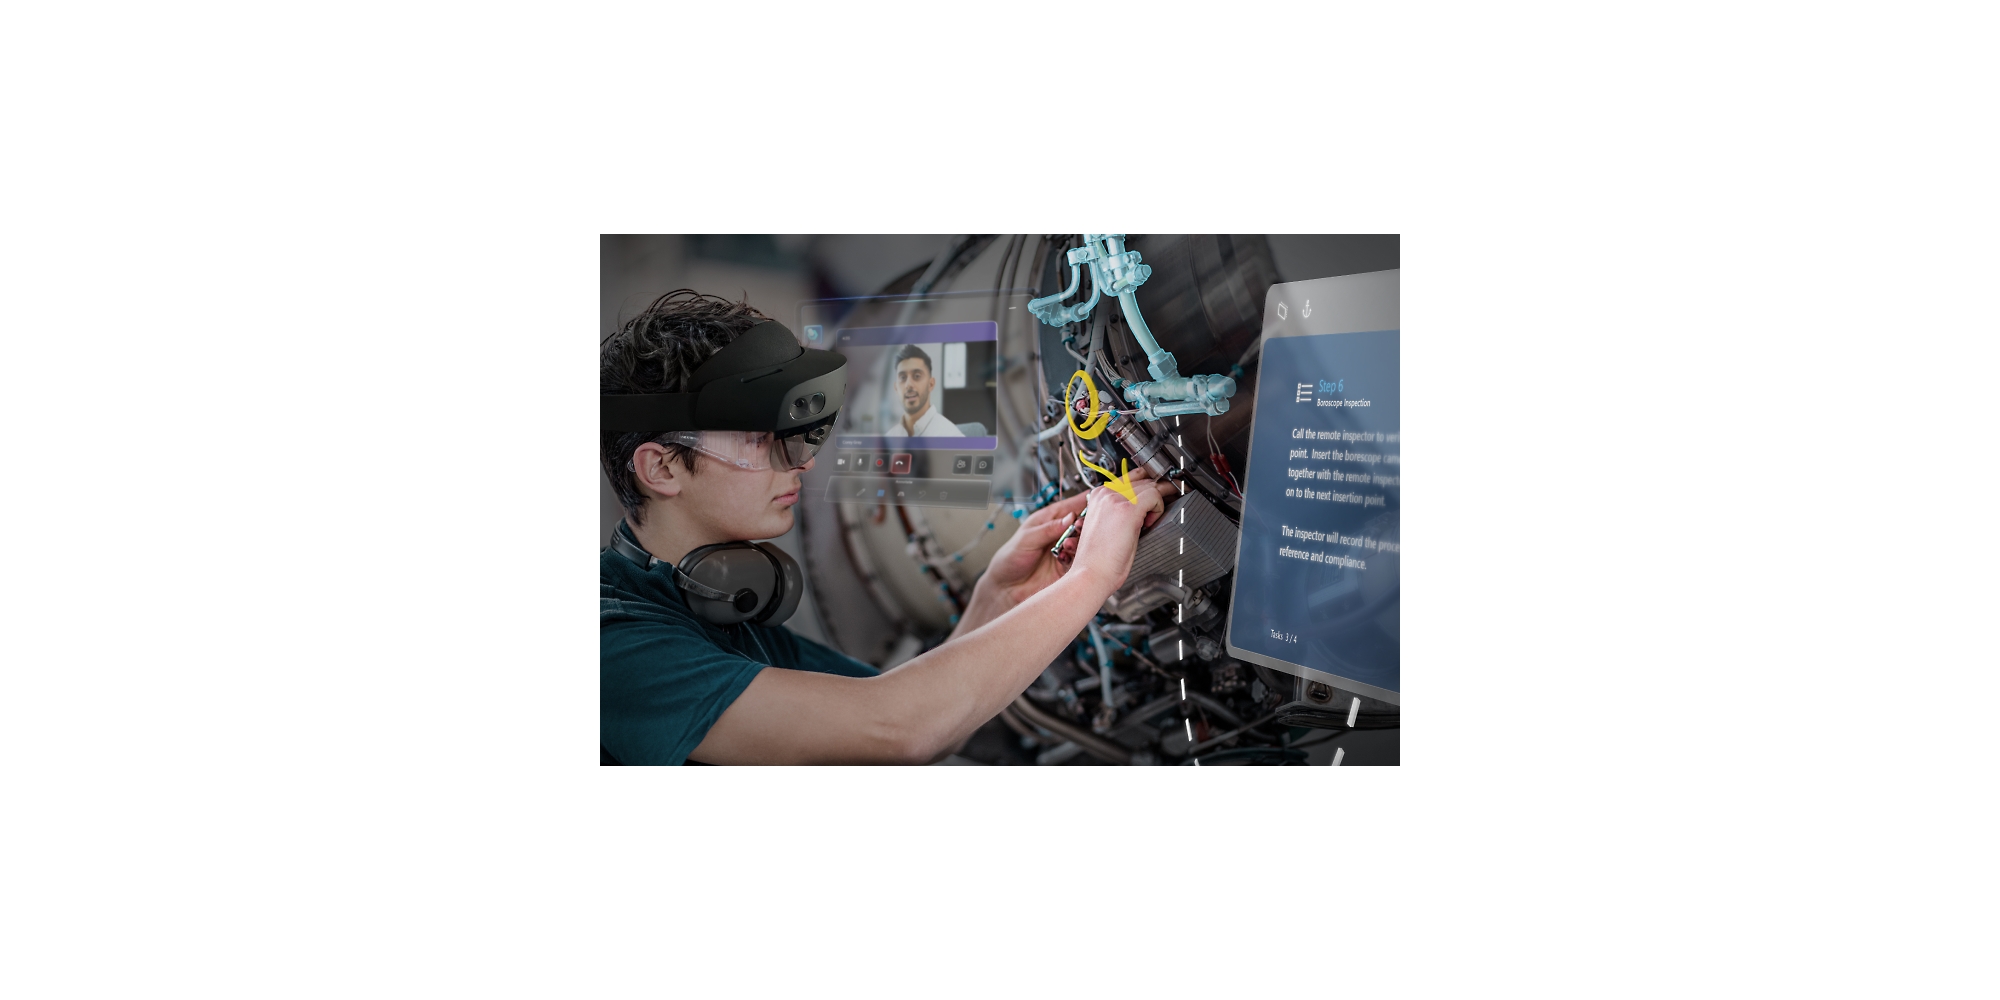 Een persoon die een instructievideo bekijkt via HoloLens 2 tijdens het repareren van een machine.